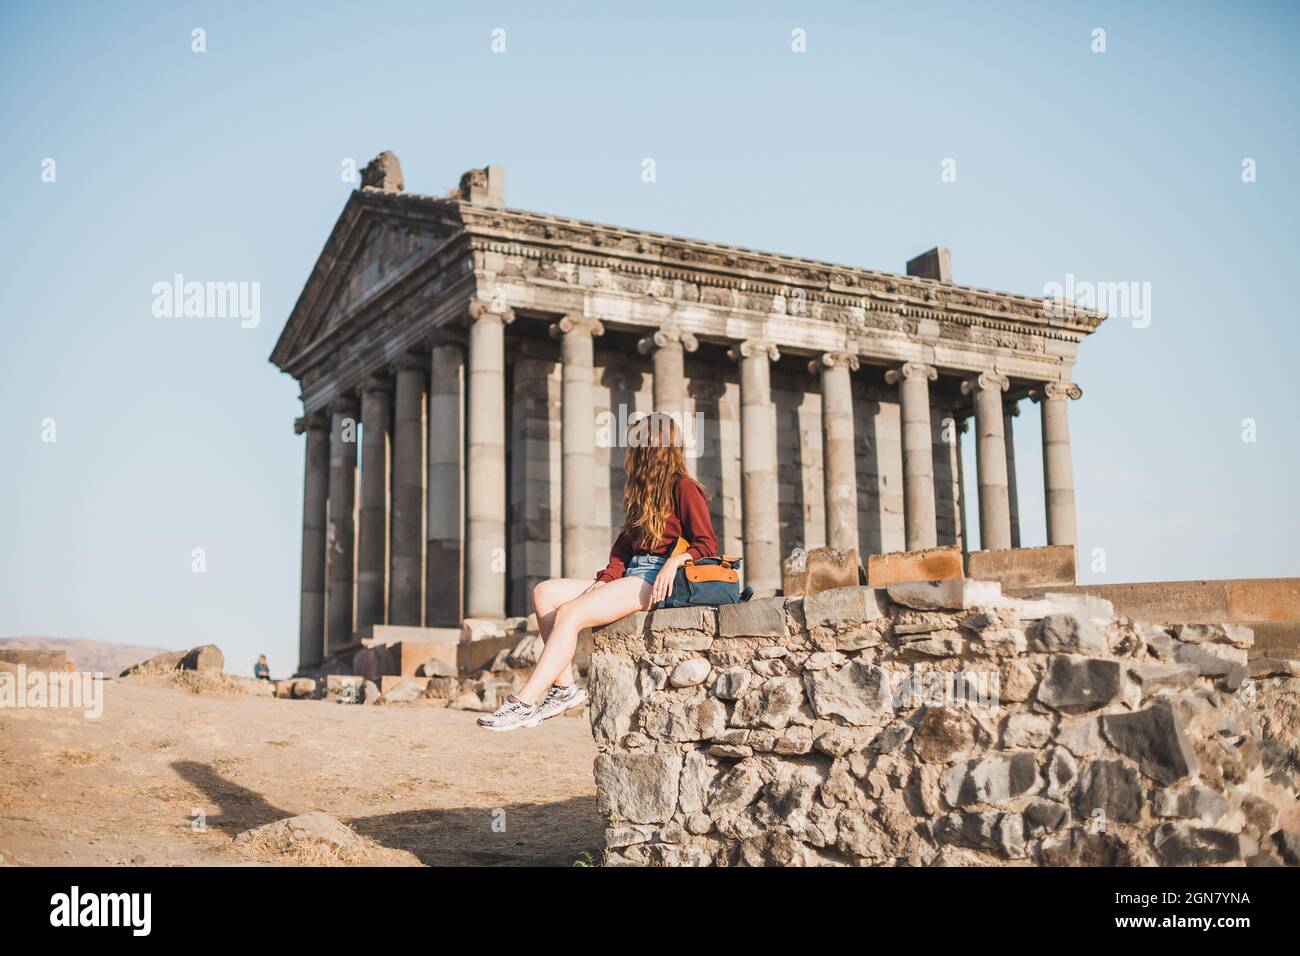 Junge Frau, die in der Nähe des alten Steingebäudes mit Säulen in Armenien sitzt. Tourismus in Armenien. Reisende, die ein altes Architekturgebäude betrachten. Stockfoto